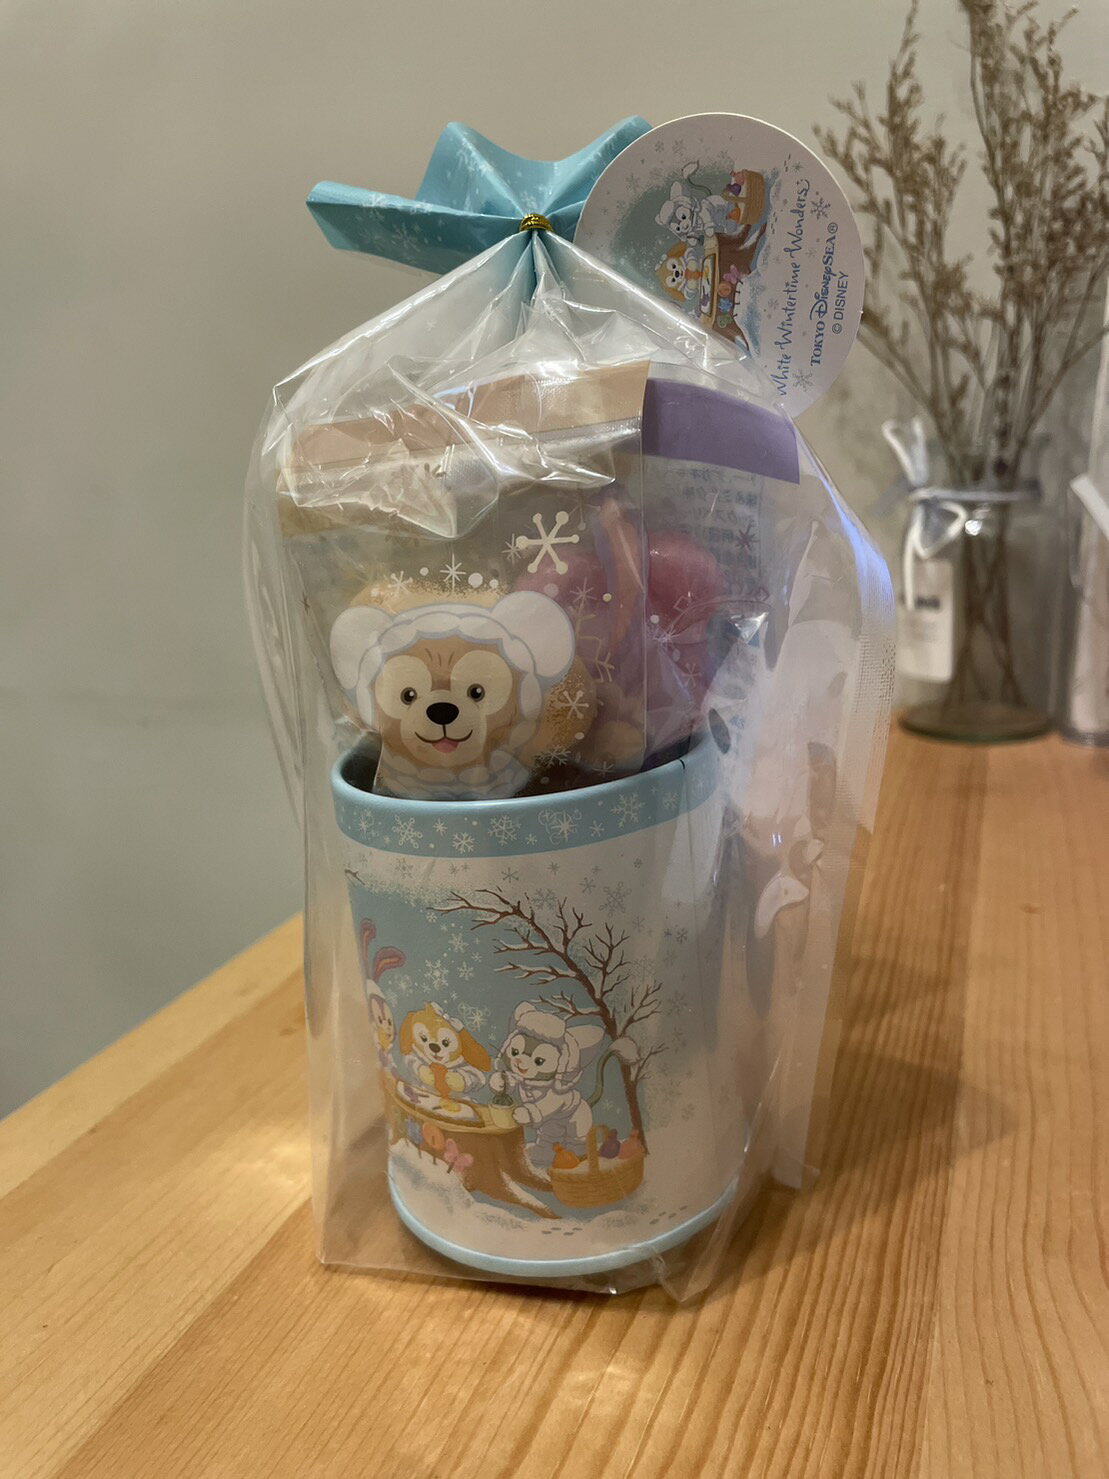 【現貨】東京迪士尼tokyo disney 達菲熊與好朋友 棒棒糖 糖果罐